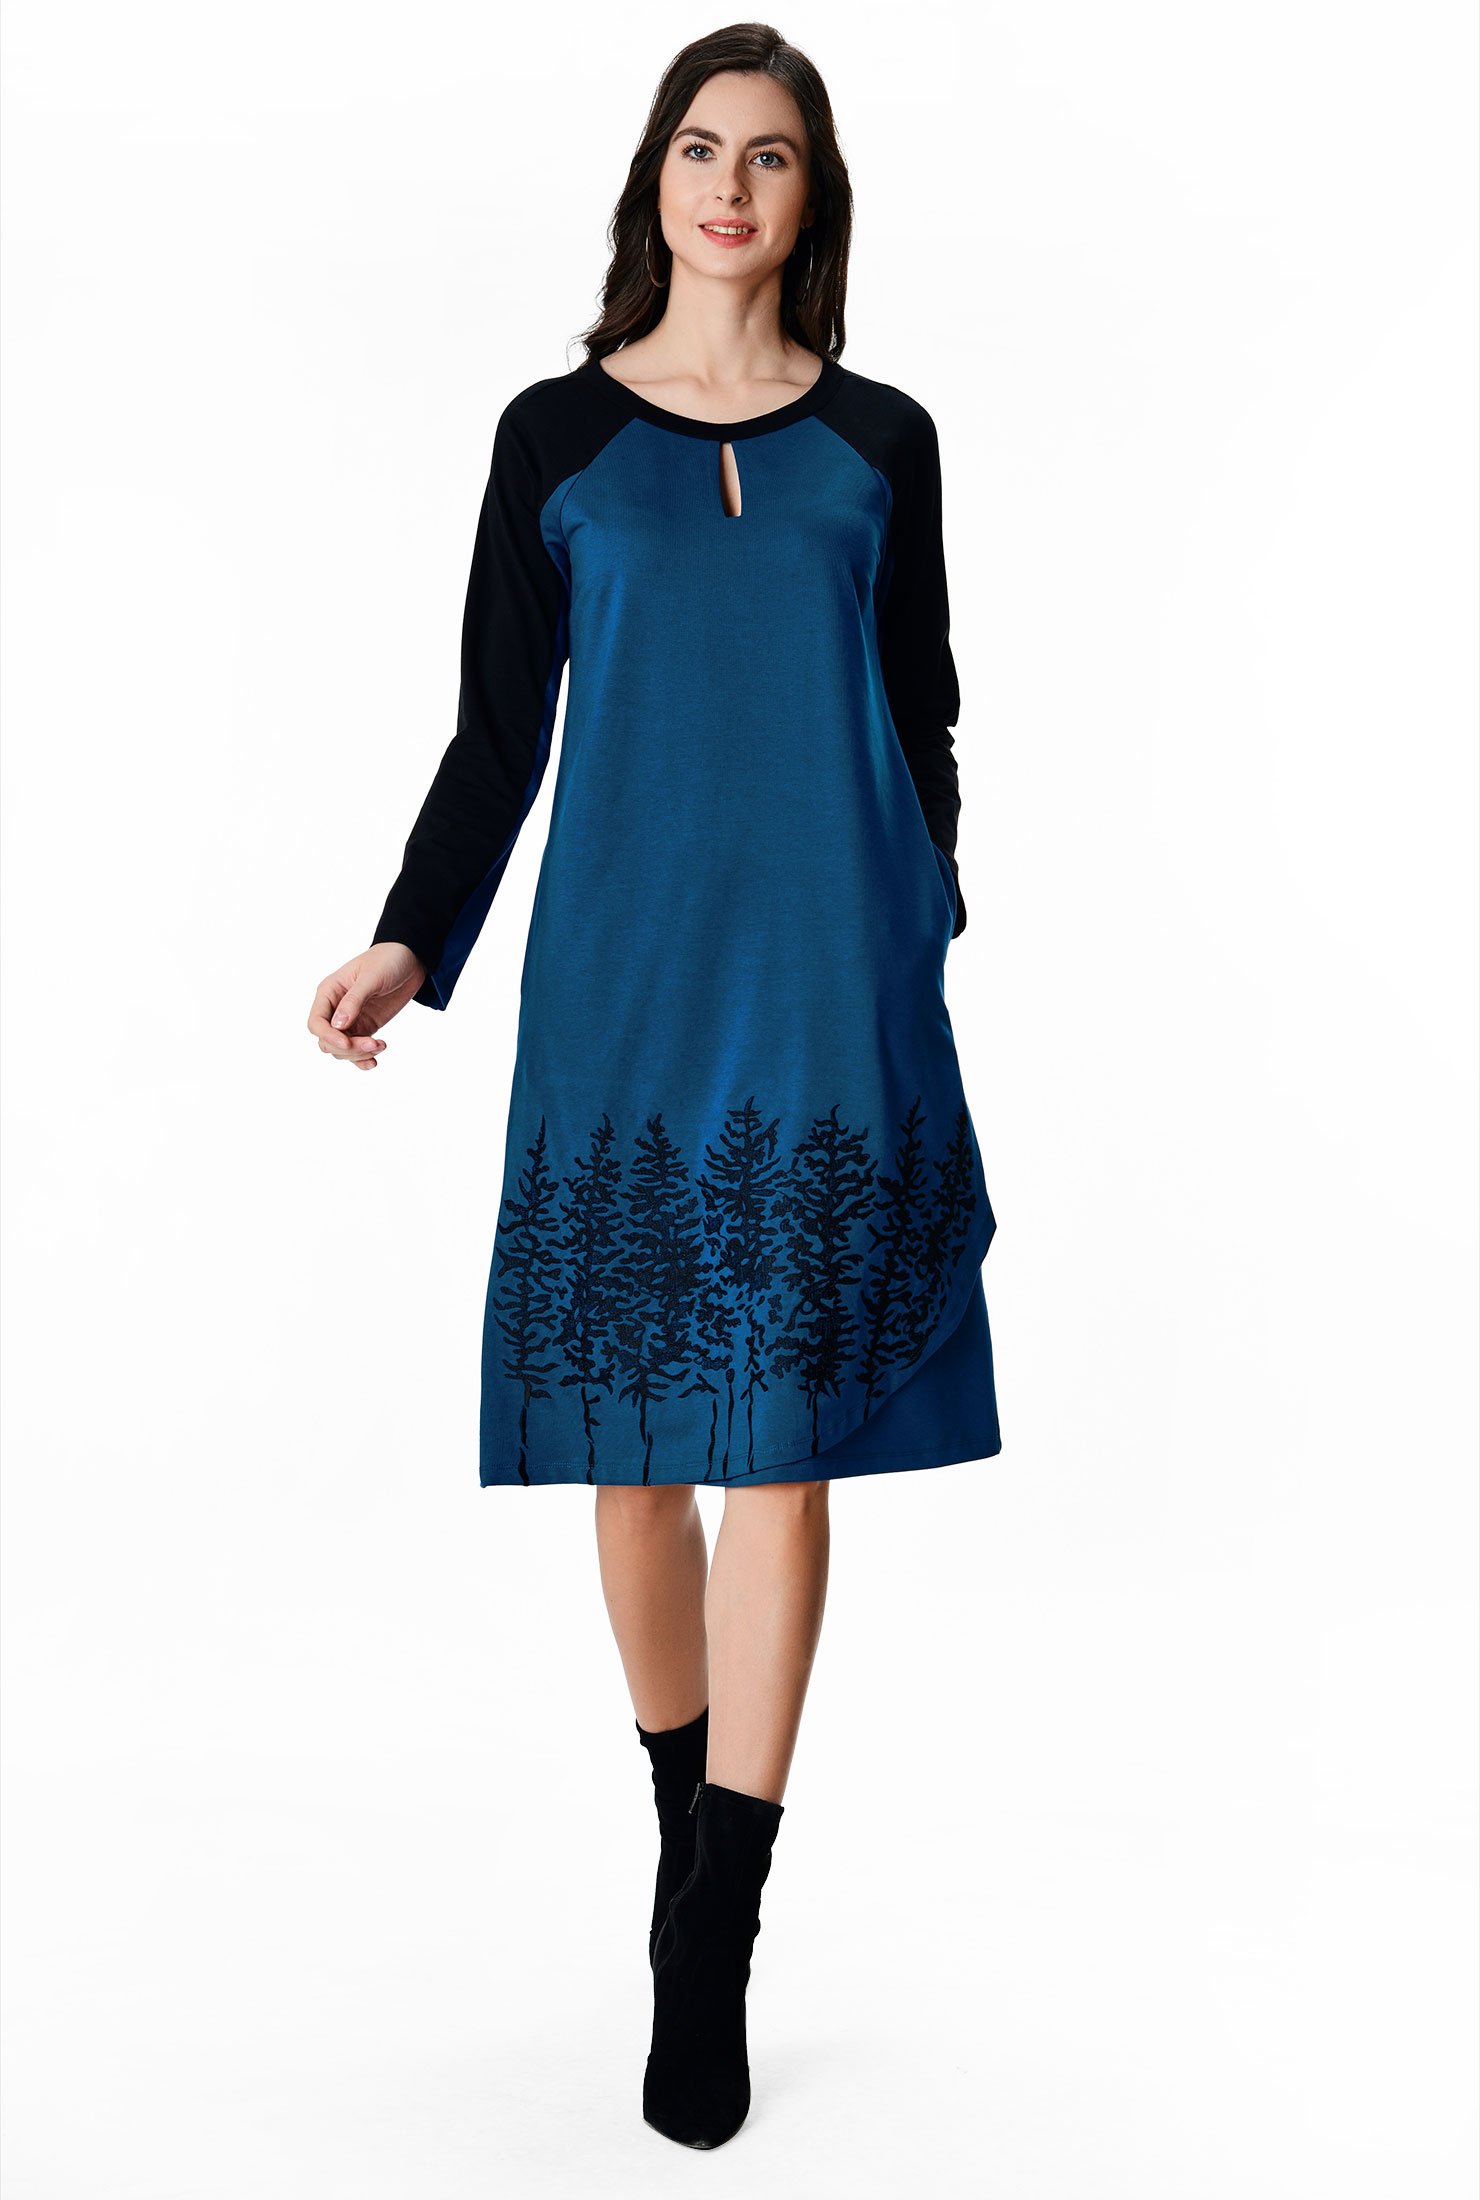 Shop Landscape embroidery colorblock cotton jersey dress | eShakti